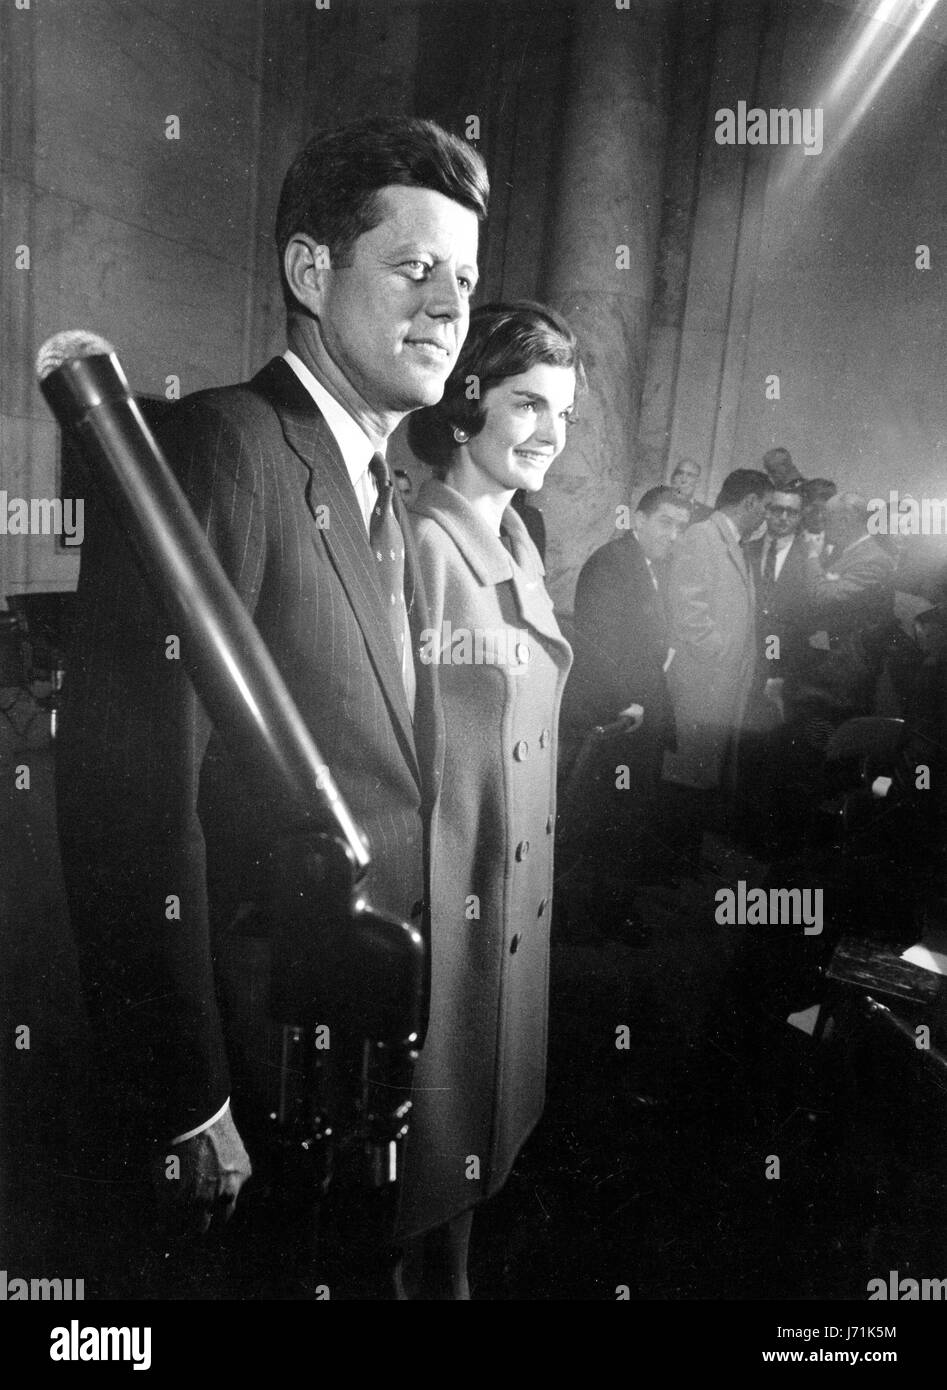 Le 6 janvier, 1960 - Washington, DC, USA - John F. Kennedy est le plus jeune élu président des États-Unis et la première catholique de servir dans ce bureau. La promesse de cette énergique et Telegenic chef était de ne pas être remplies, comme il a été assassiné près de la fin de sa troisième année de mandat. Photo : John F. Kennedy avec son épouse Jacqueline LEE JACKIE KENNEDY au cours des années 1960, élection présidentielle. (Crédit Image : © Keystone Press Agency/Keystone USA par ZUMAPRESS.com) Banque D'Images